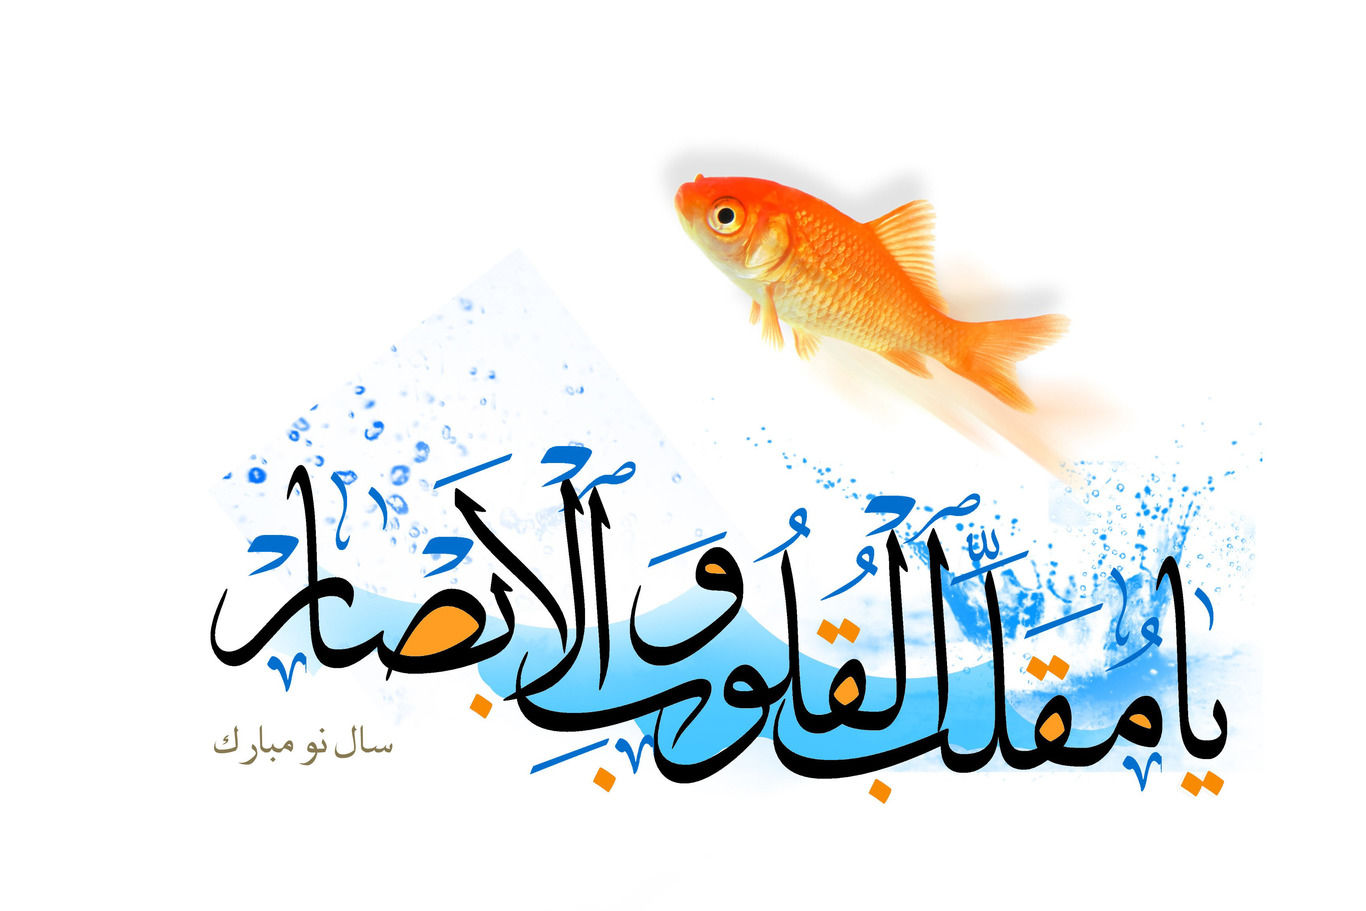 پیام تبریک عید نوروز؛ جملات رسمی و دوستانه برای تبریک عید ۱۴۰۲